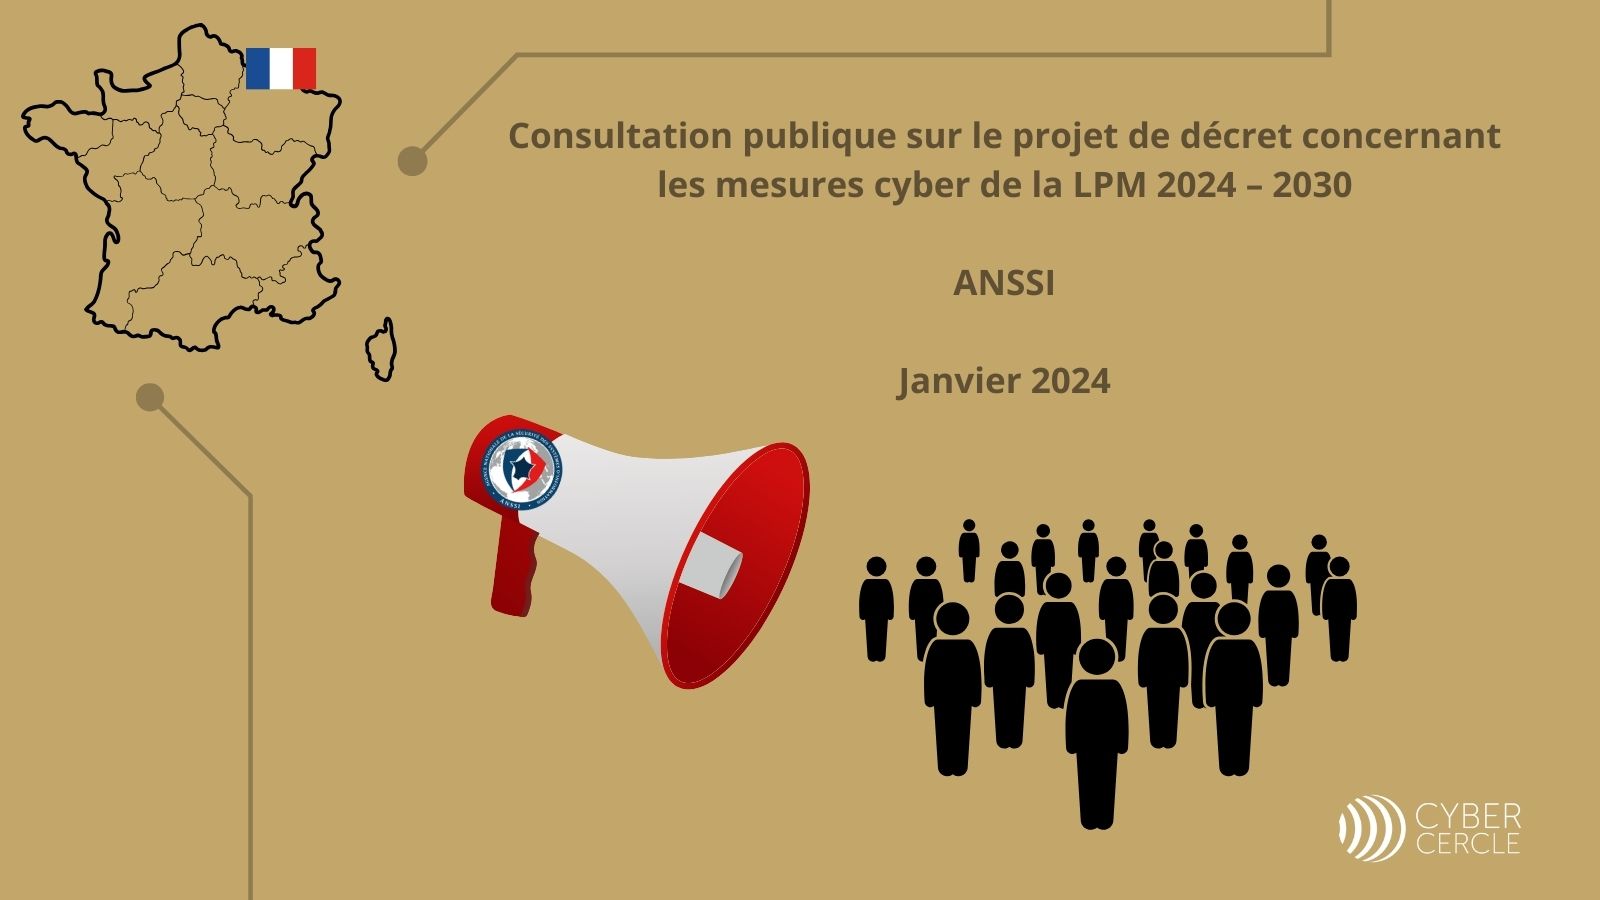 Consultation publique de l'ANSSI quant au projet de décret pour la LPM 2024-2030